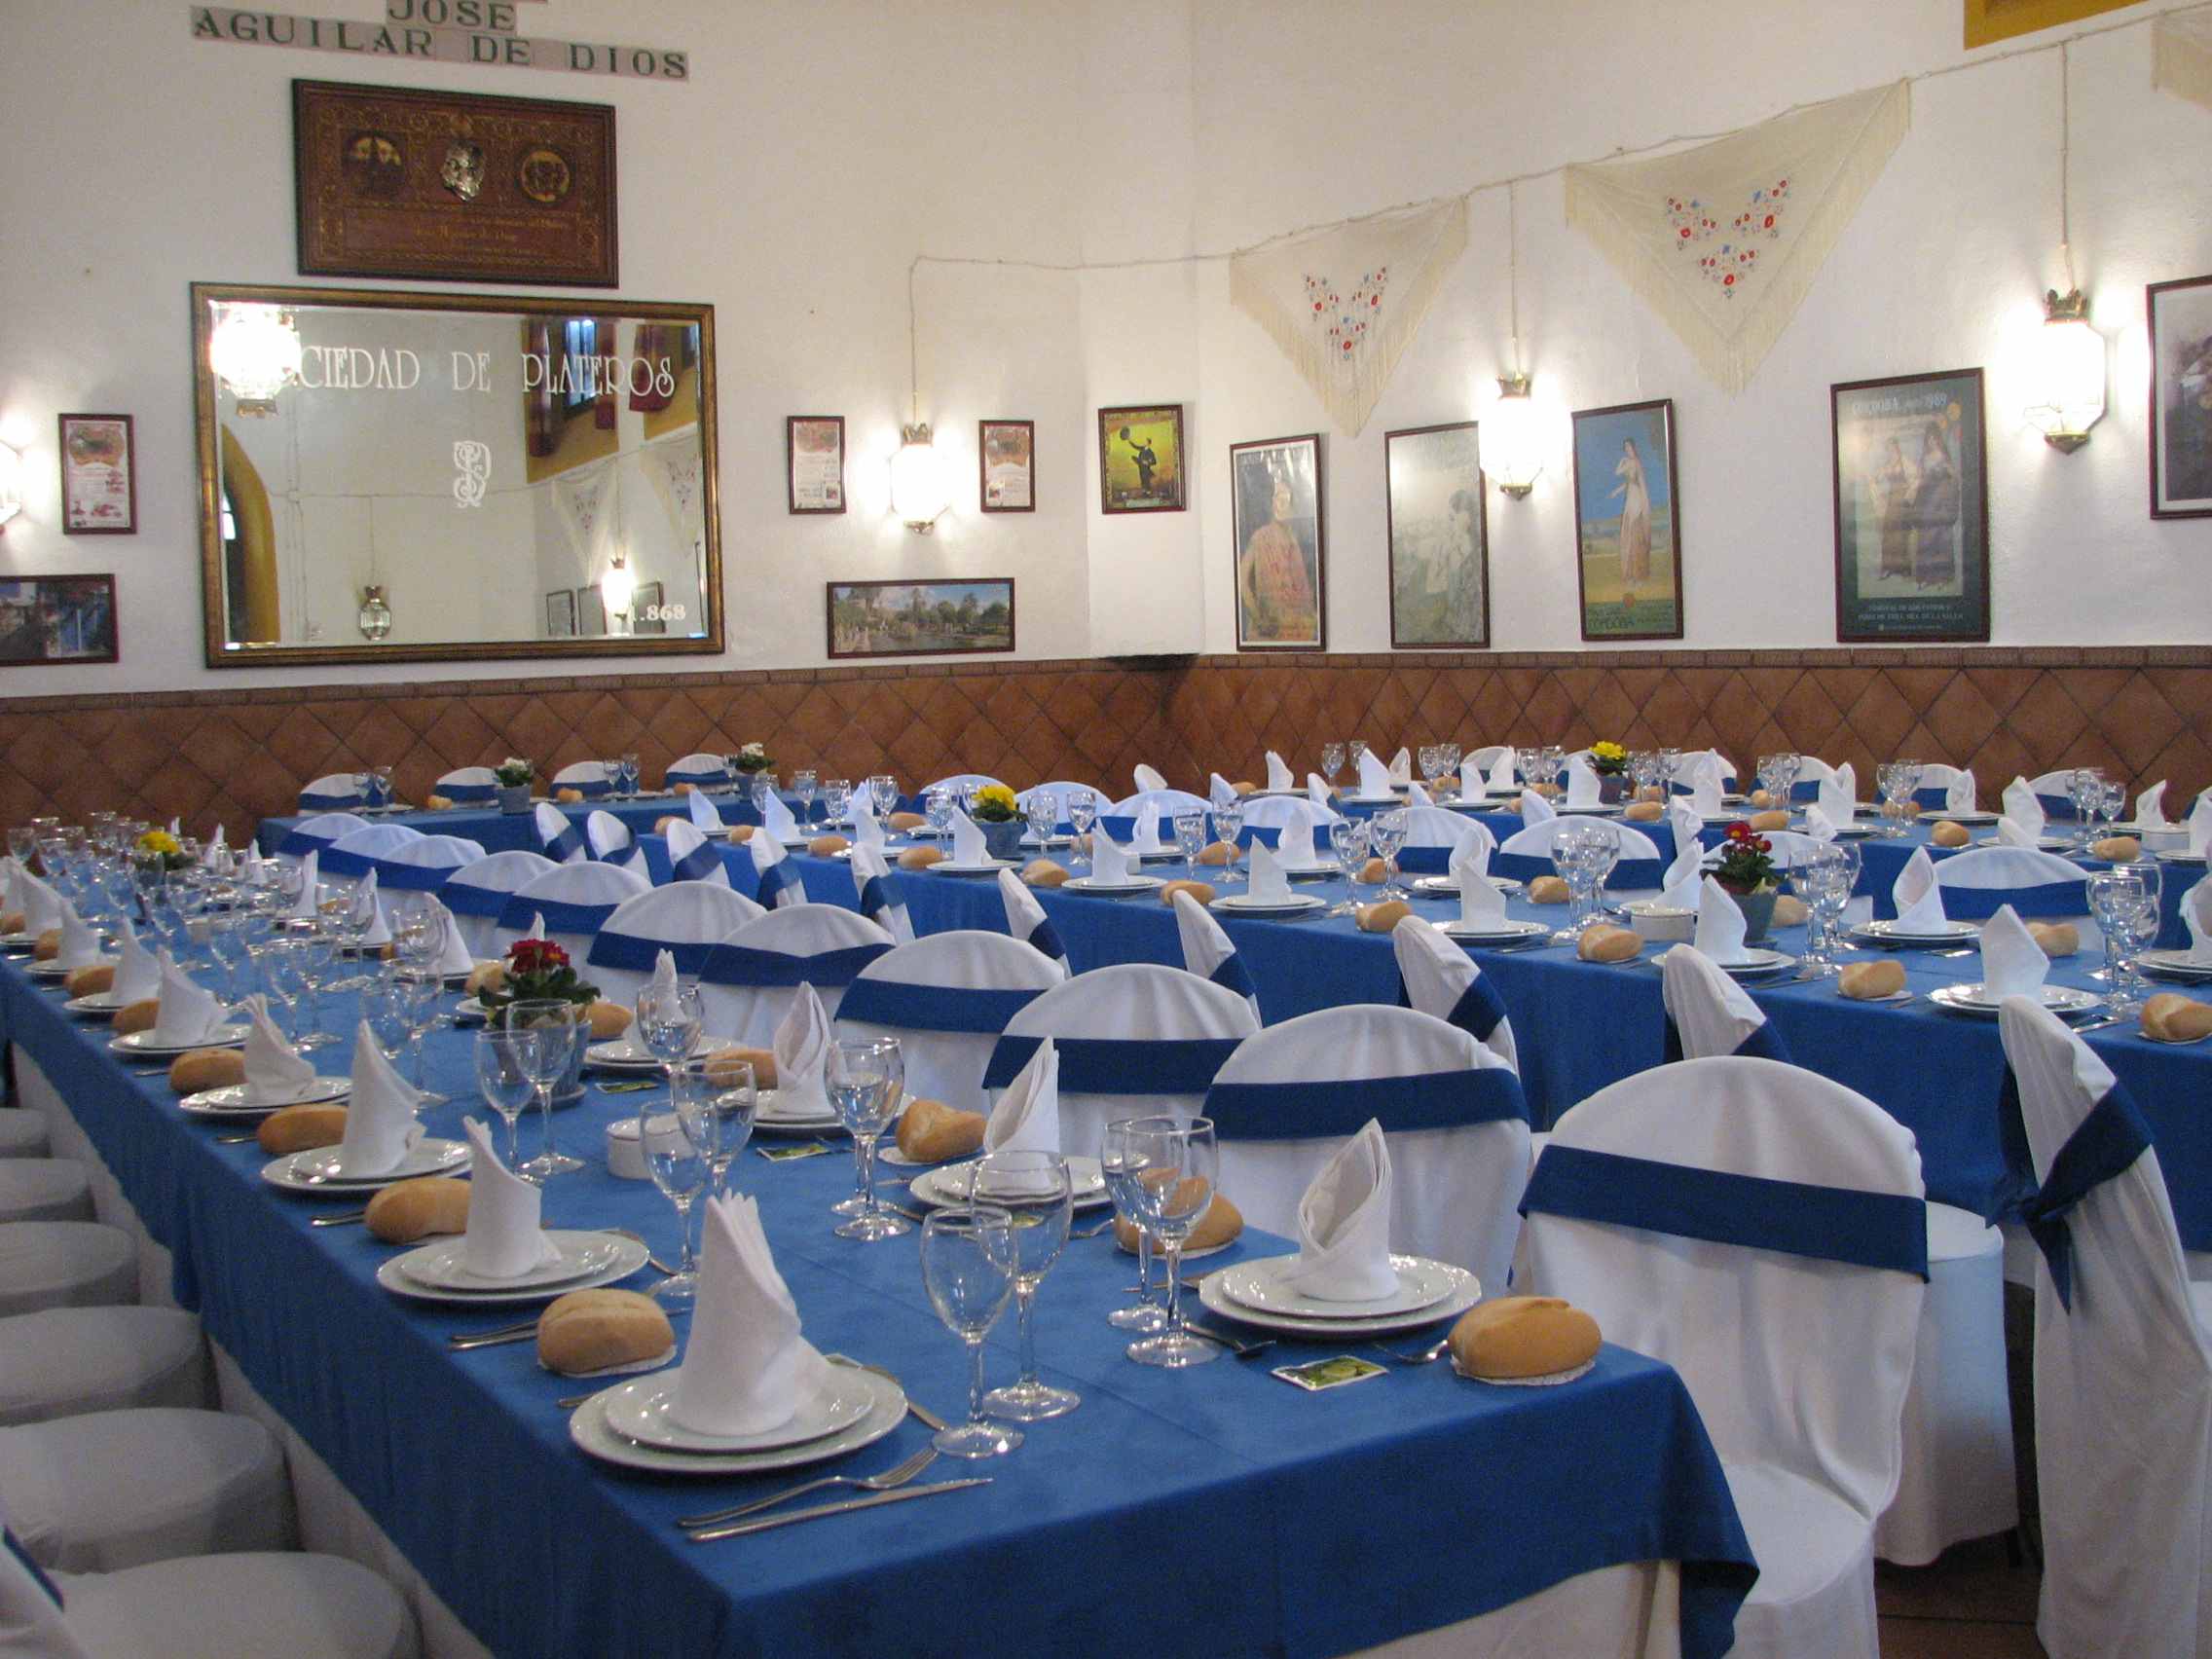 Mesas para evento en el salón José Aguilar de Dios del Restaurante de Córdoba Sociedad Plateros Maria Auxiliadora